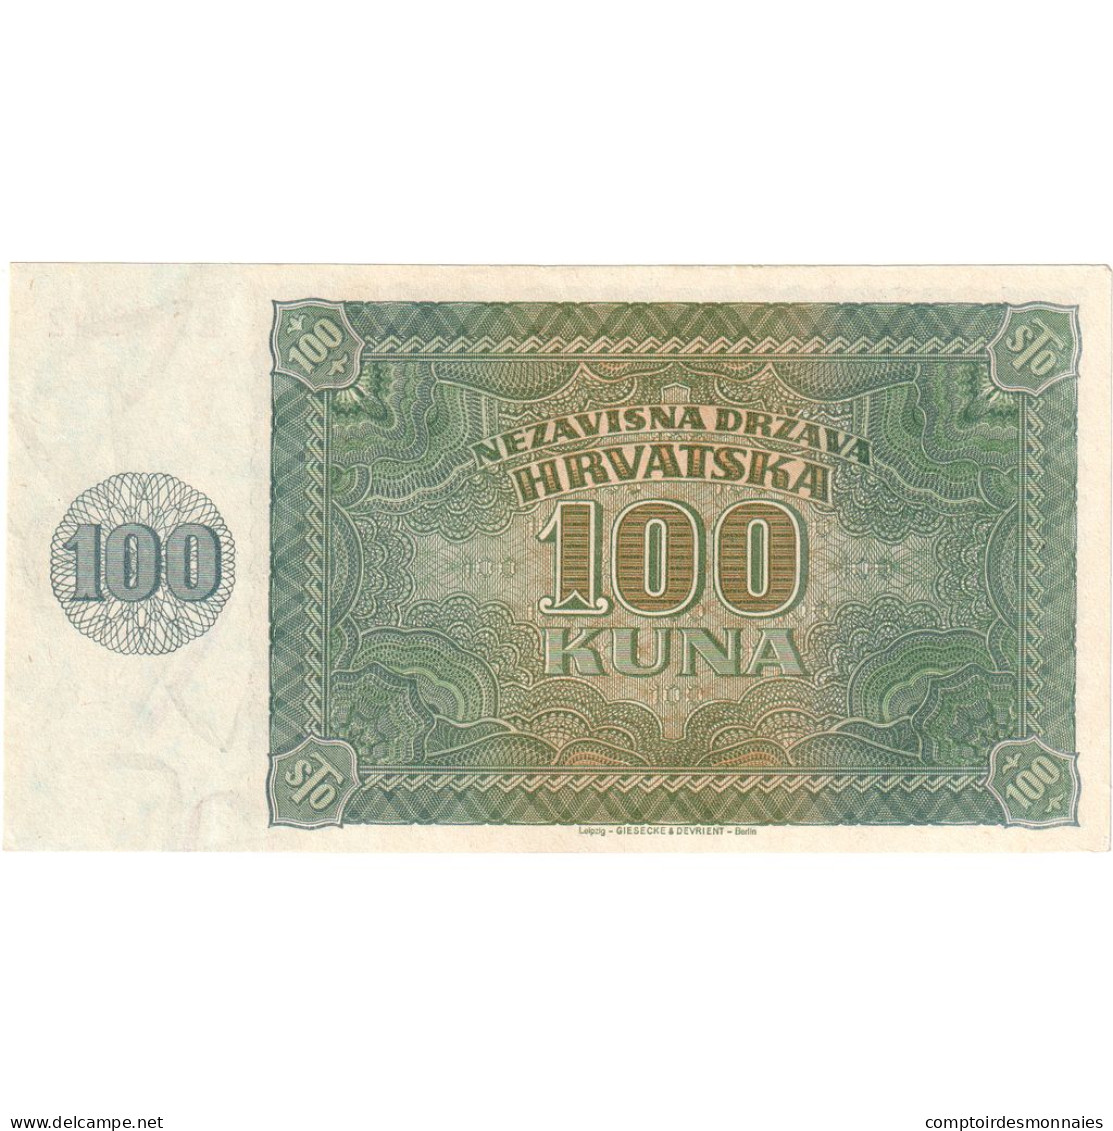 Billet, Croatie, 100 Kuna, 1941, 1941-05-26, KM:2a, TTB - Kroatien